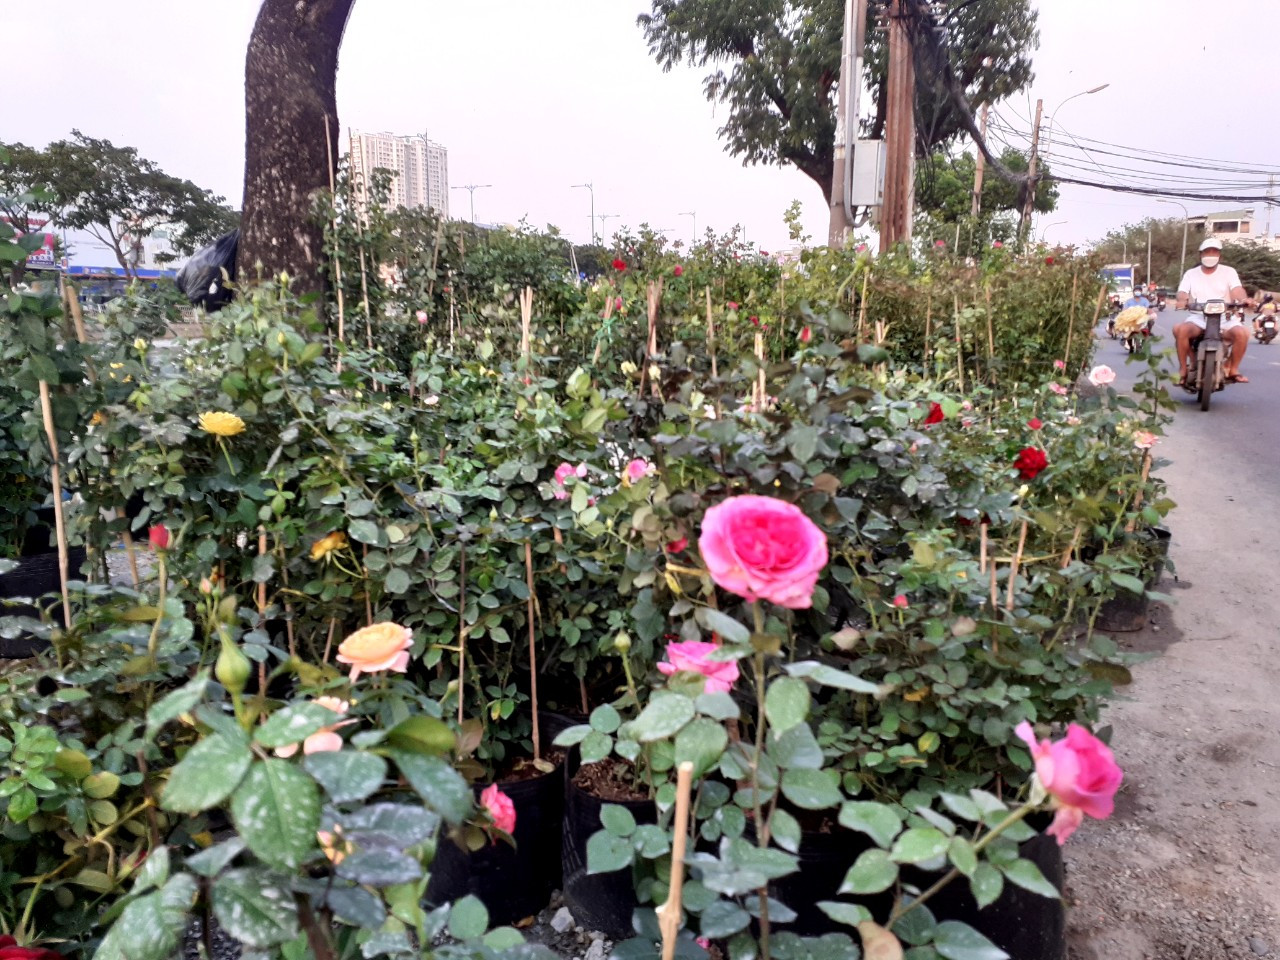 Hoa hồng được bày bán dọc bến Bình Đông (Quận 8).